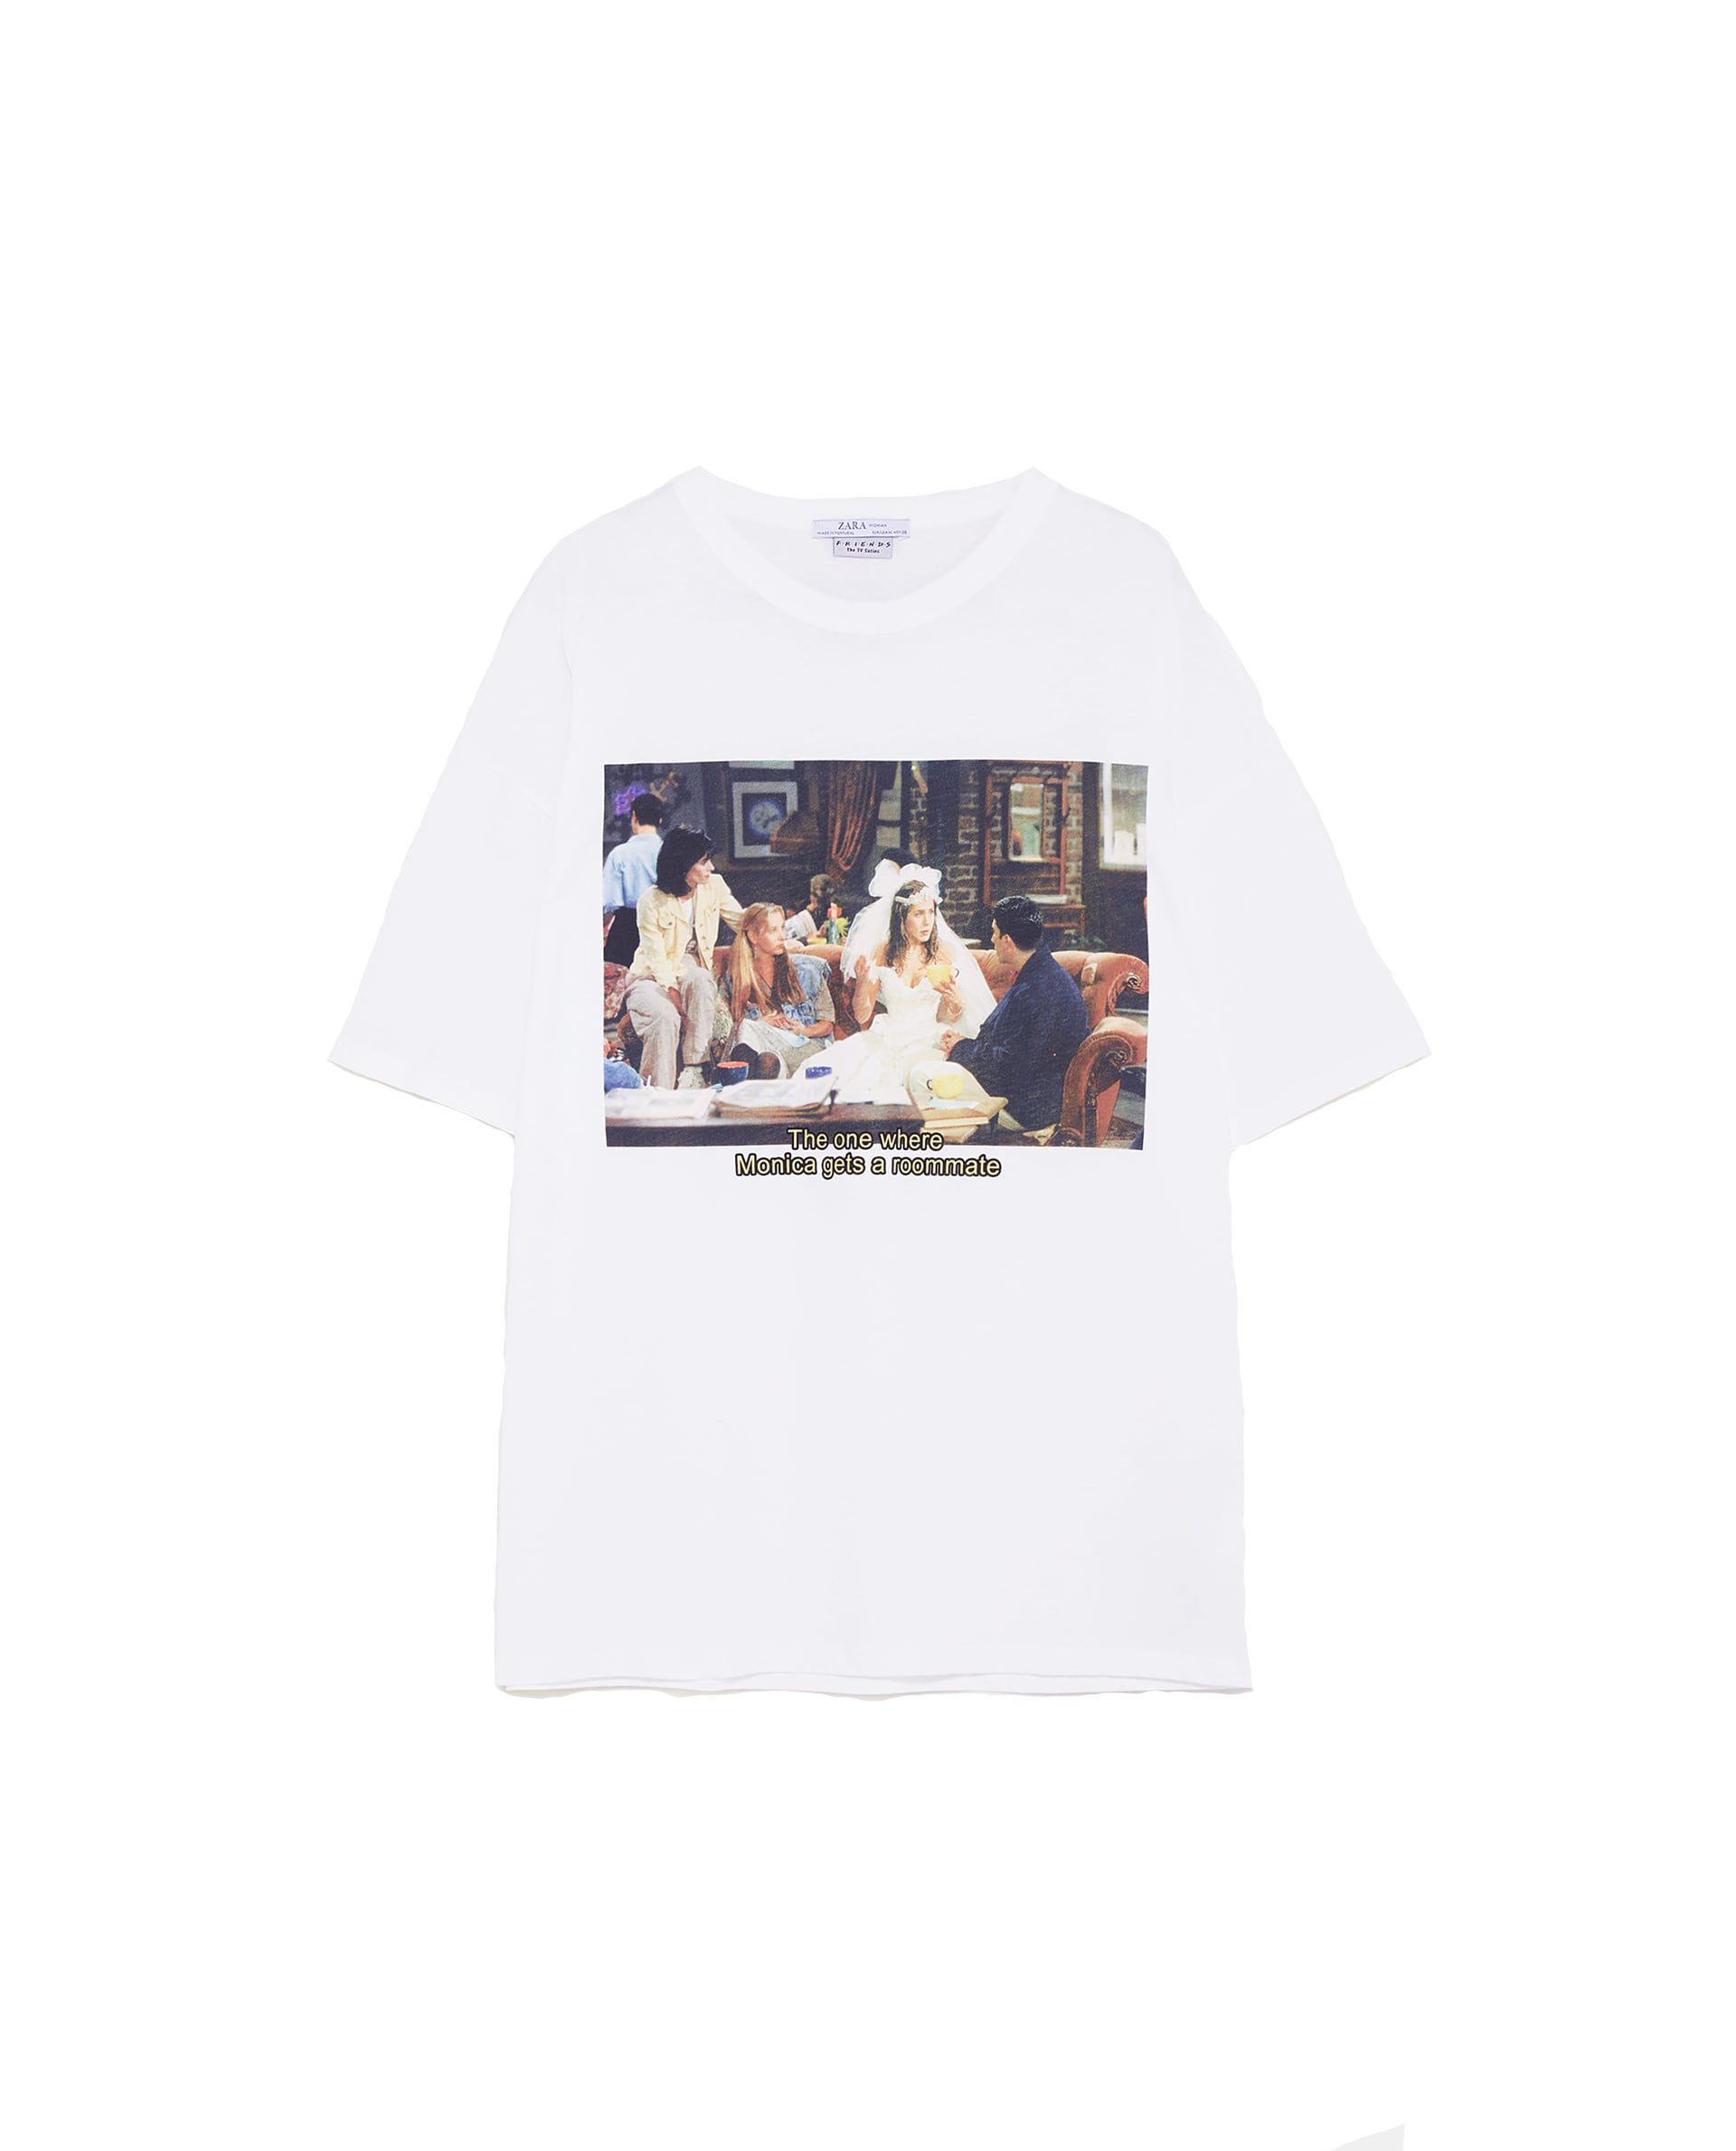 Zara camisetas de Friends, Almodóvar y en su colección